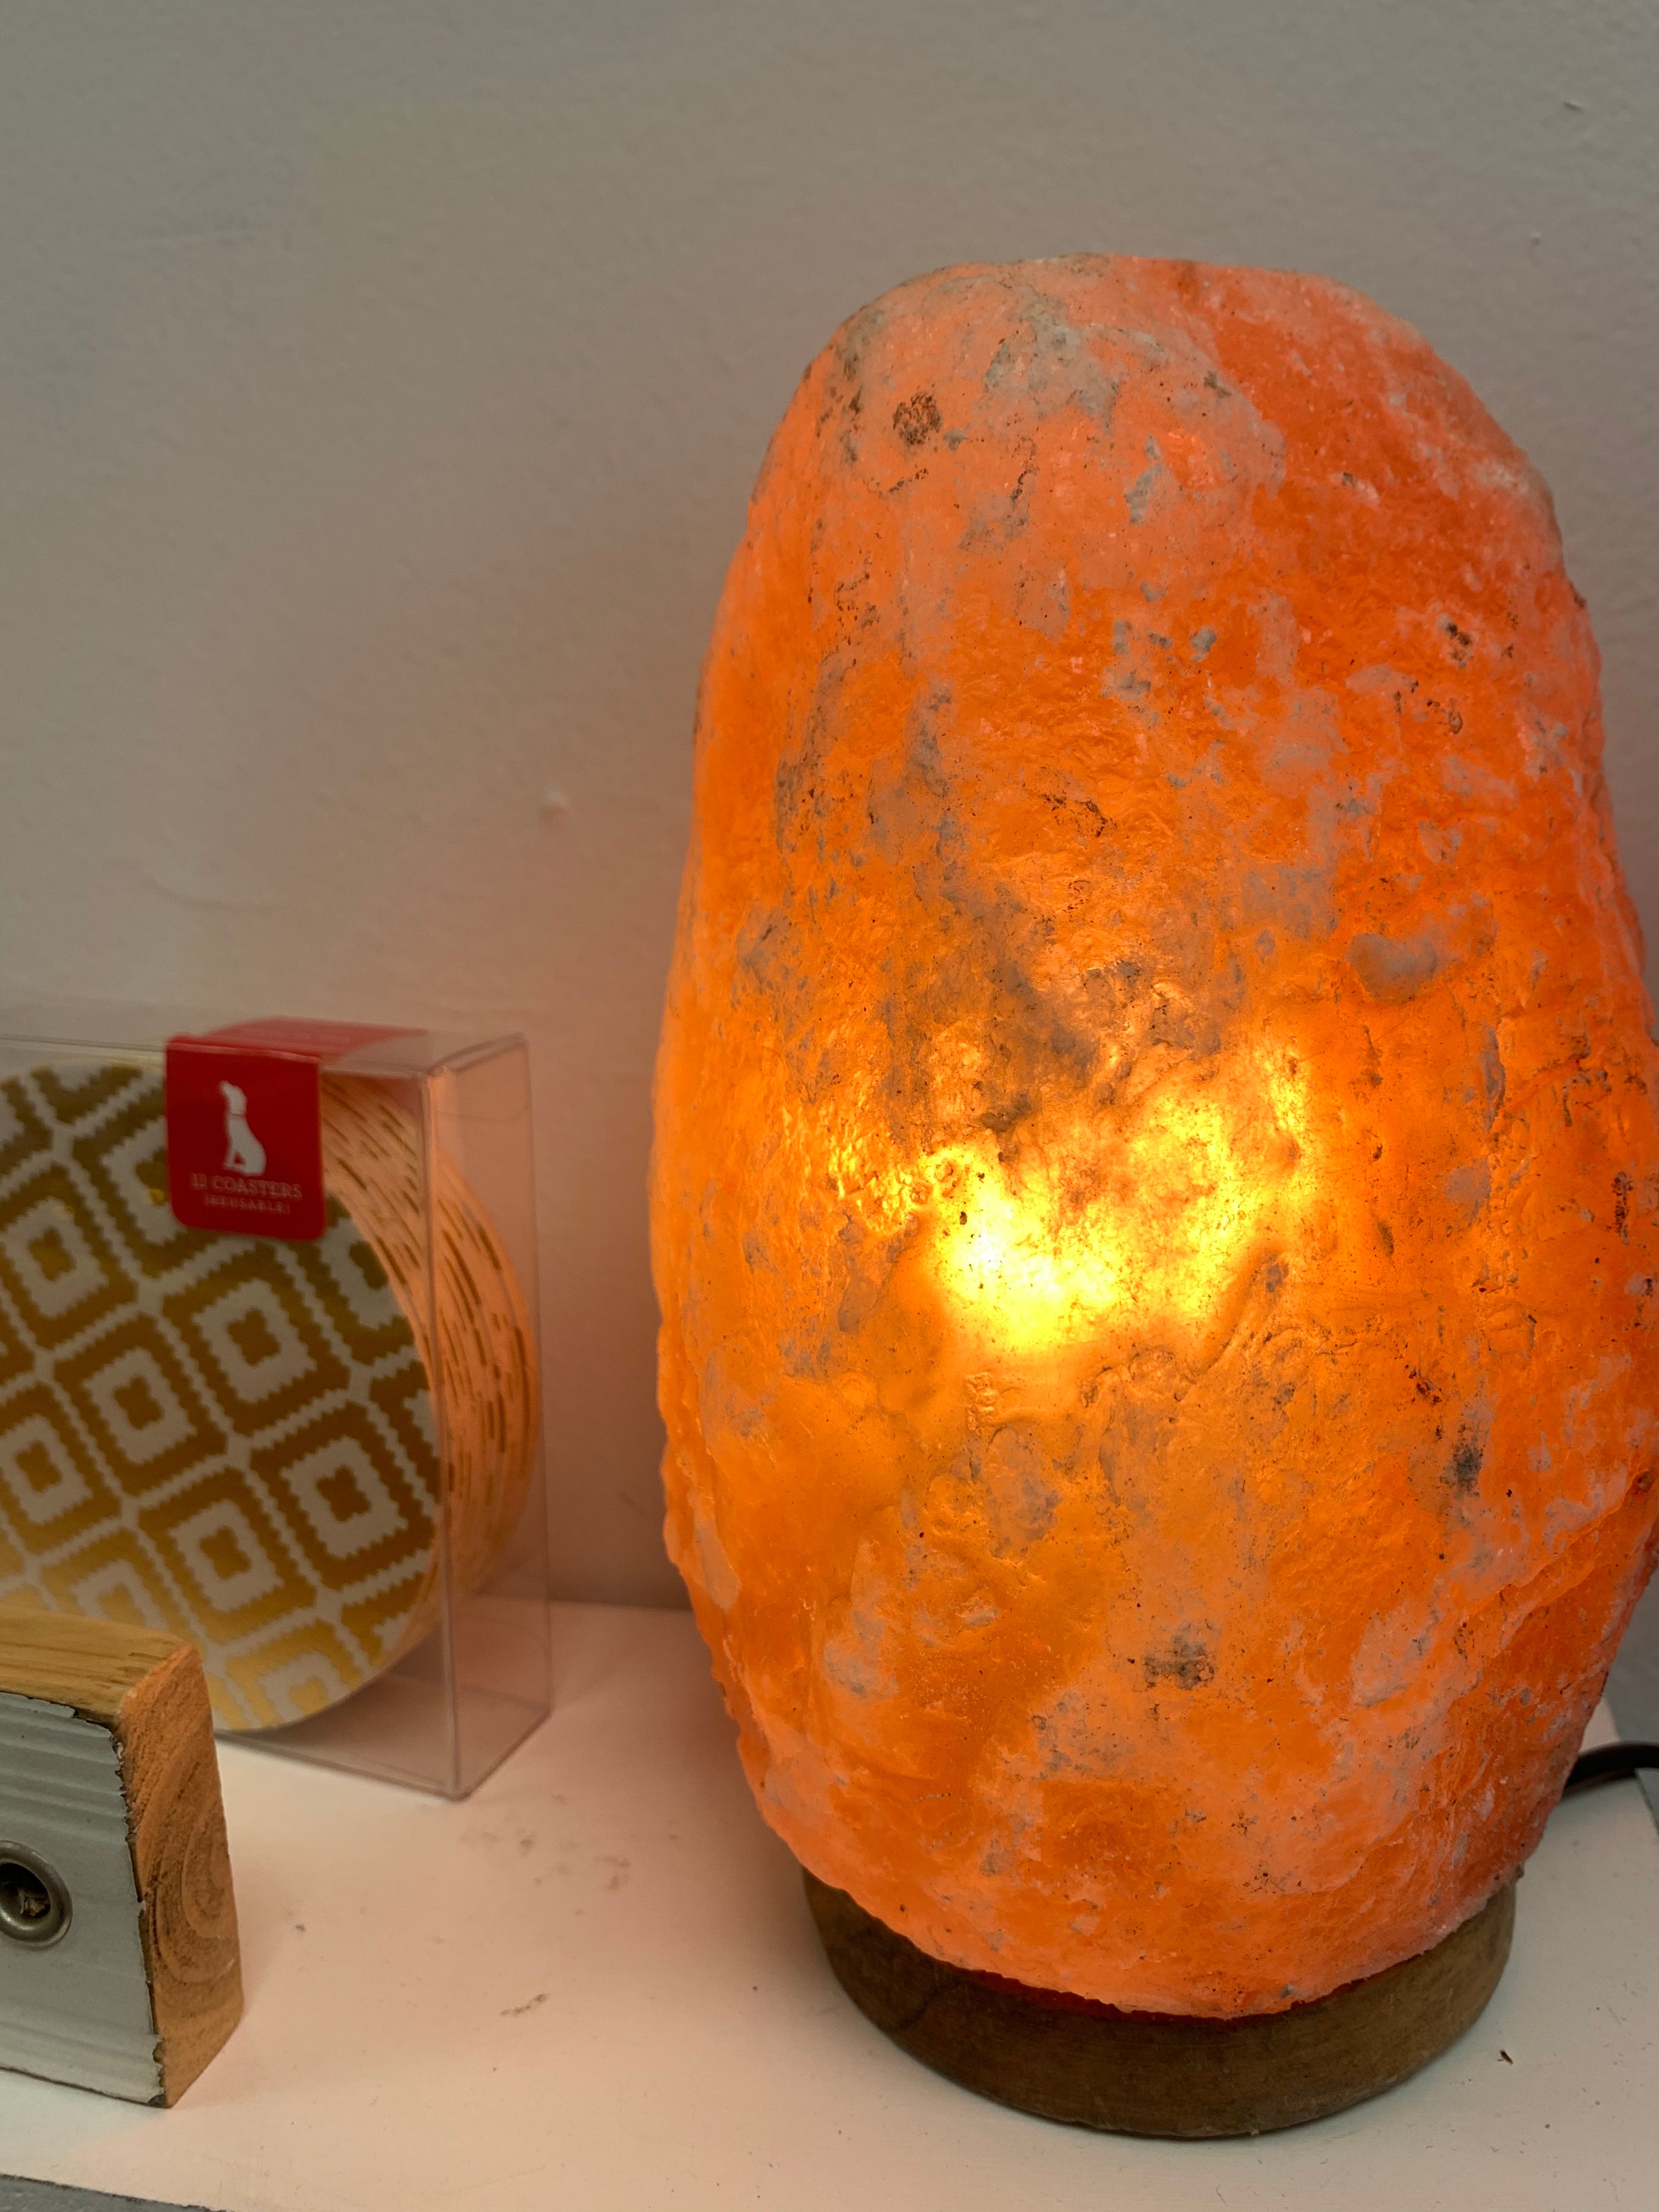 Natural Crystal Himalayan Salt Lamp